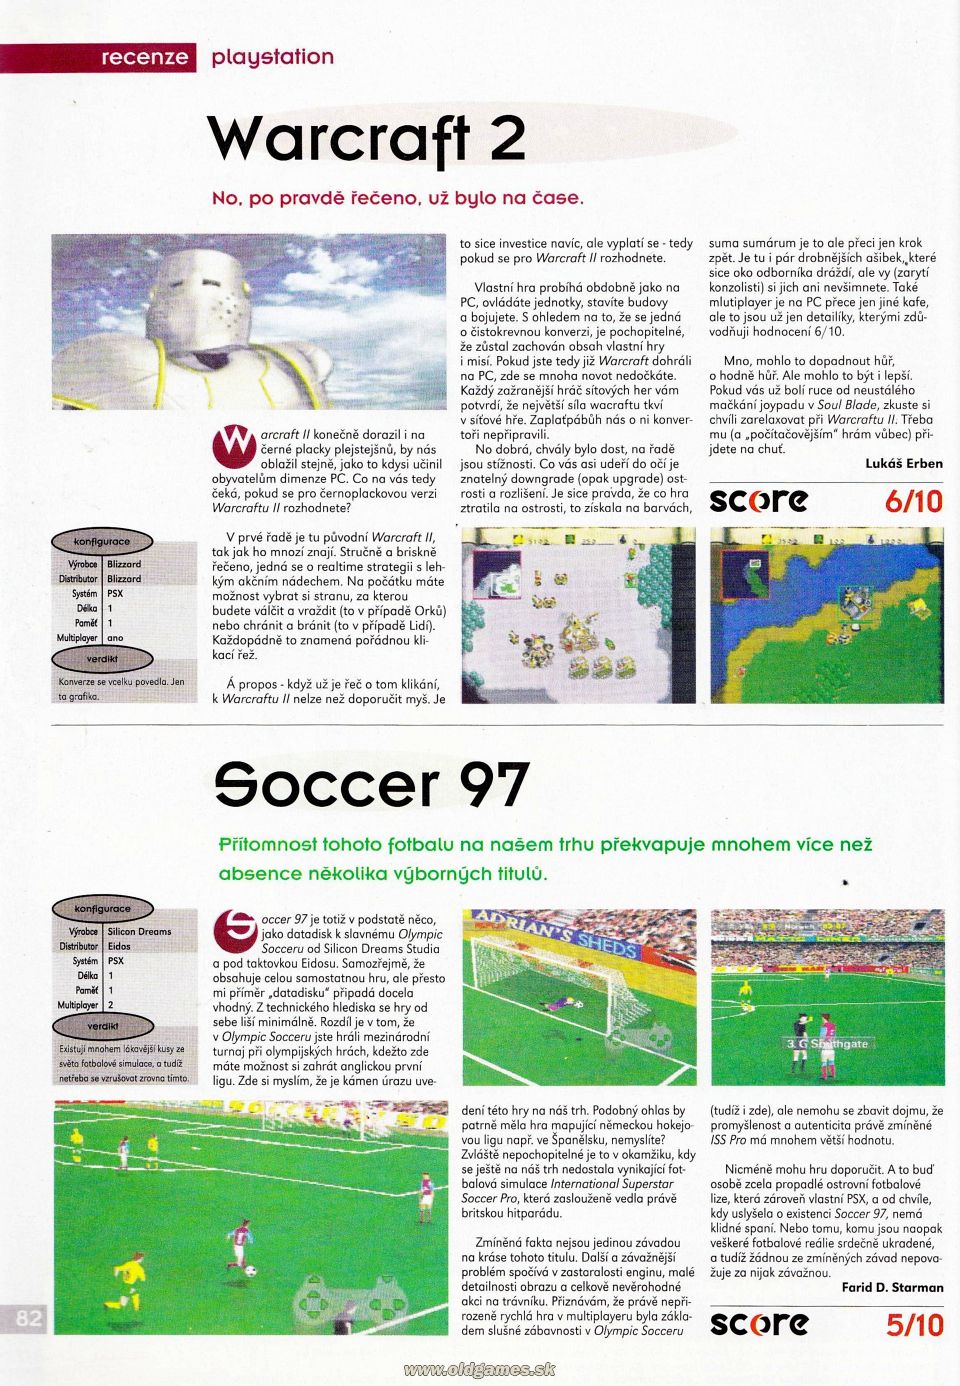 Warcraft 2, Soccer 97